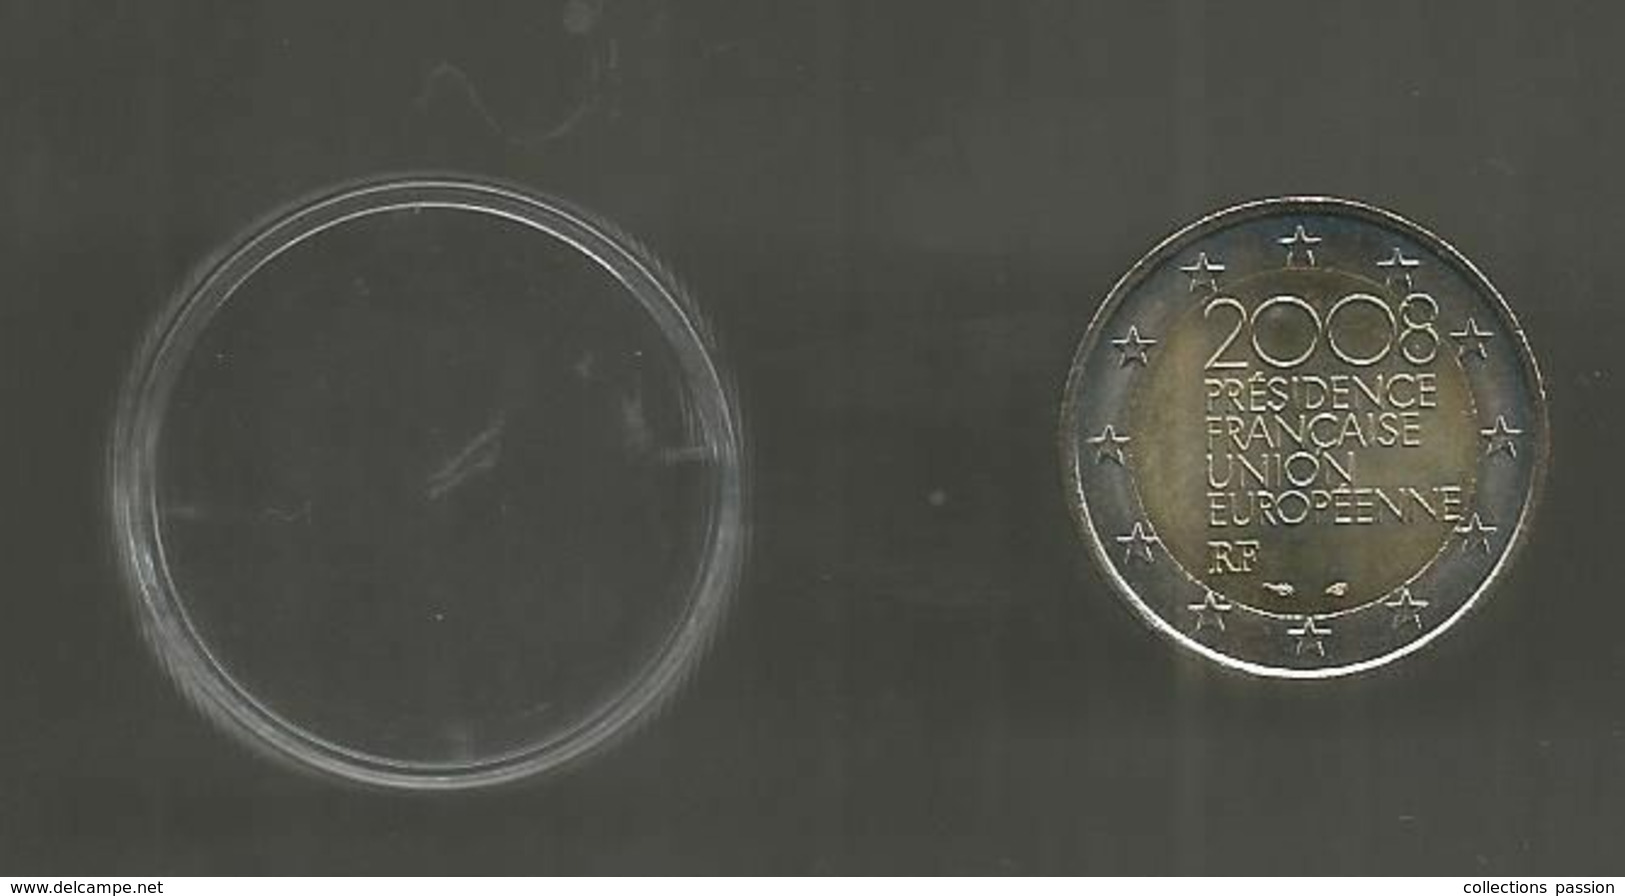 Monnaie Commémorative , 2 EURO , FRANCE , Présidence Française Union Européenne, 2008 , 2 €,  2 Scans - Frankreich